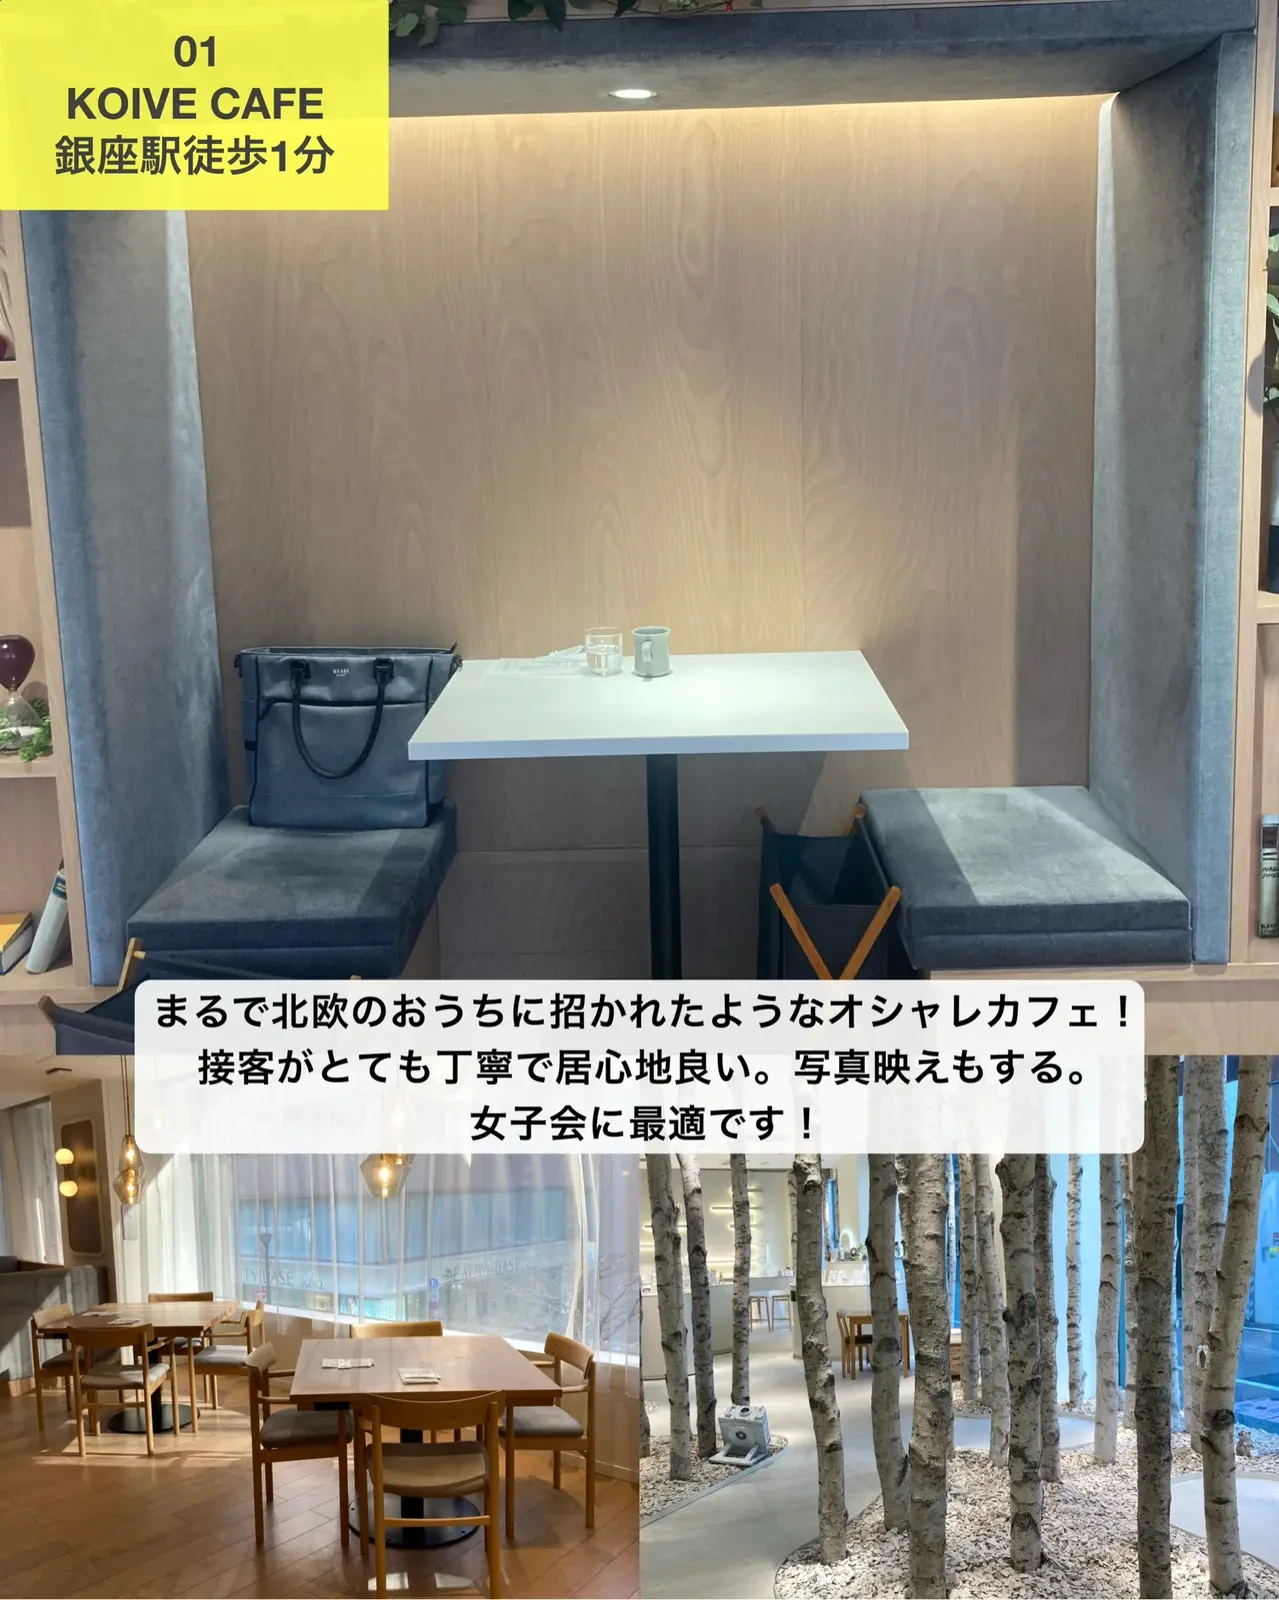 女子会にオススメ 東京カフェ4選 ゆき カフェ巡り 東京 神奈川が投稿したフォトブック Lemon8